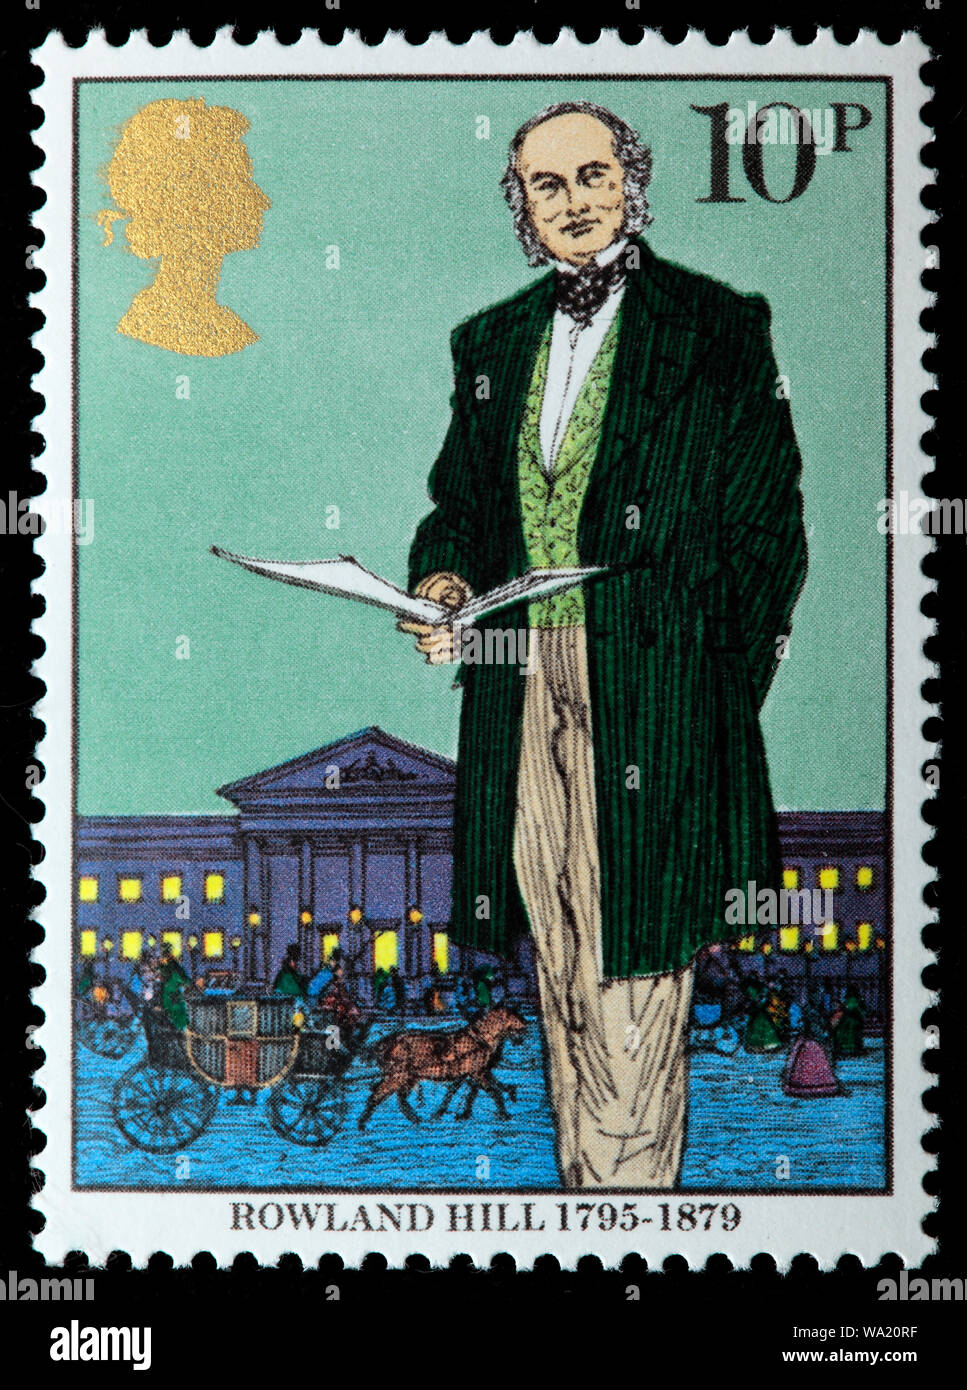 Sir Rowland Hill (1795-1879), professeur de français, inventeur, réformateur social, timbre-poste, UK, 1979 Banque D'Images